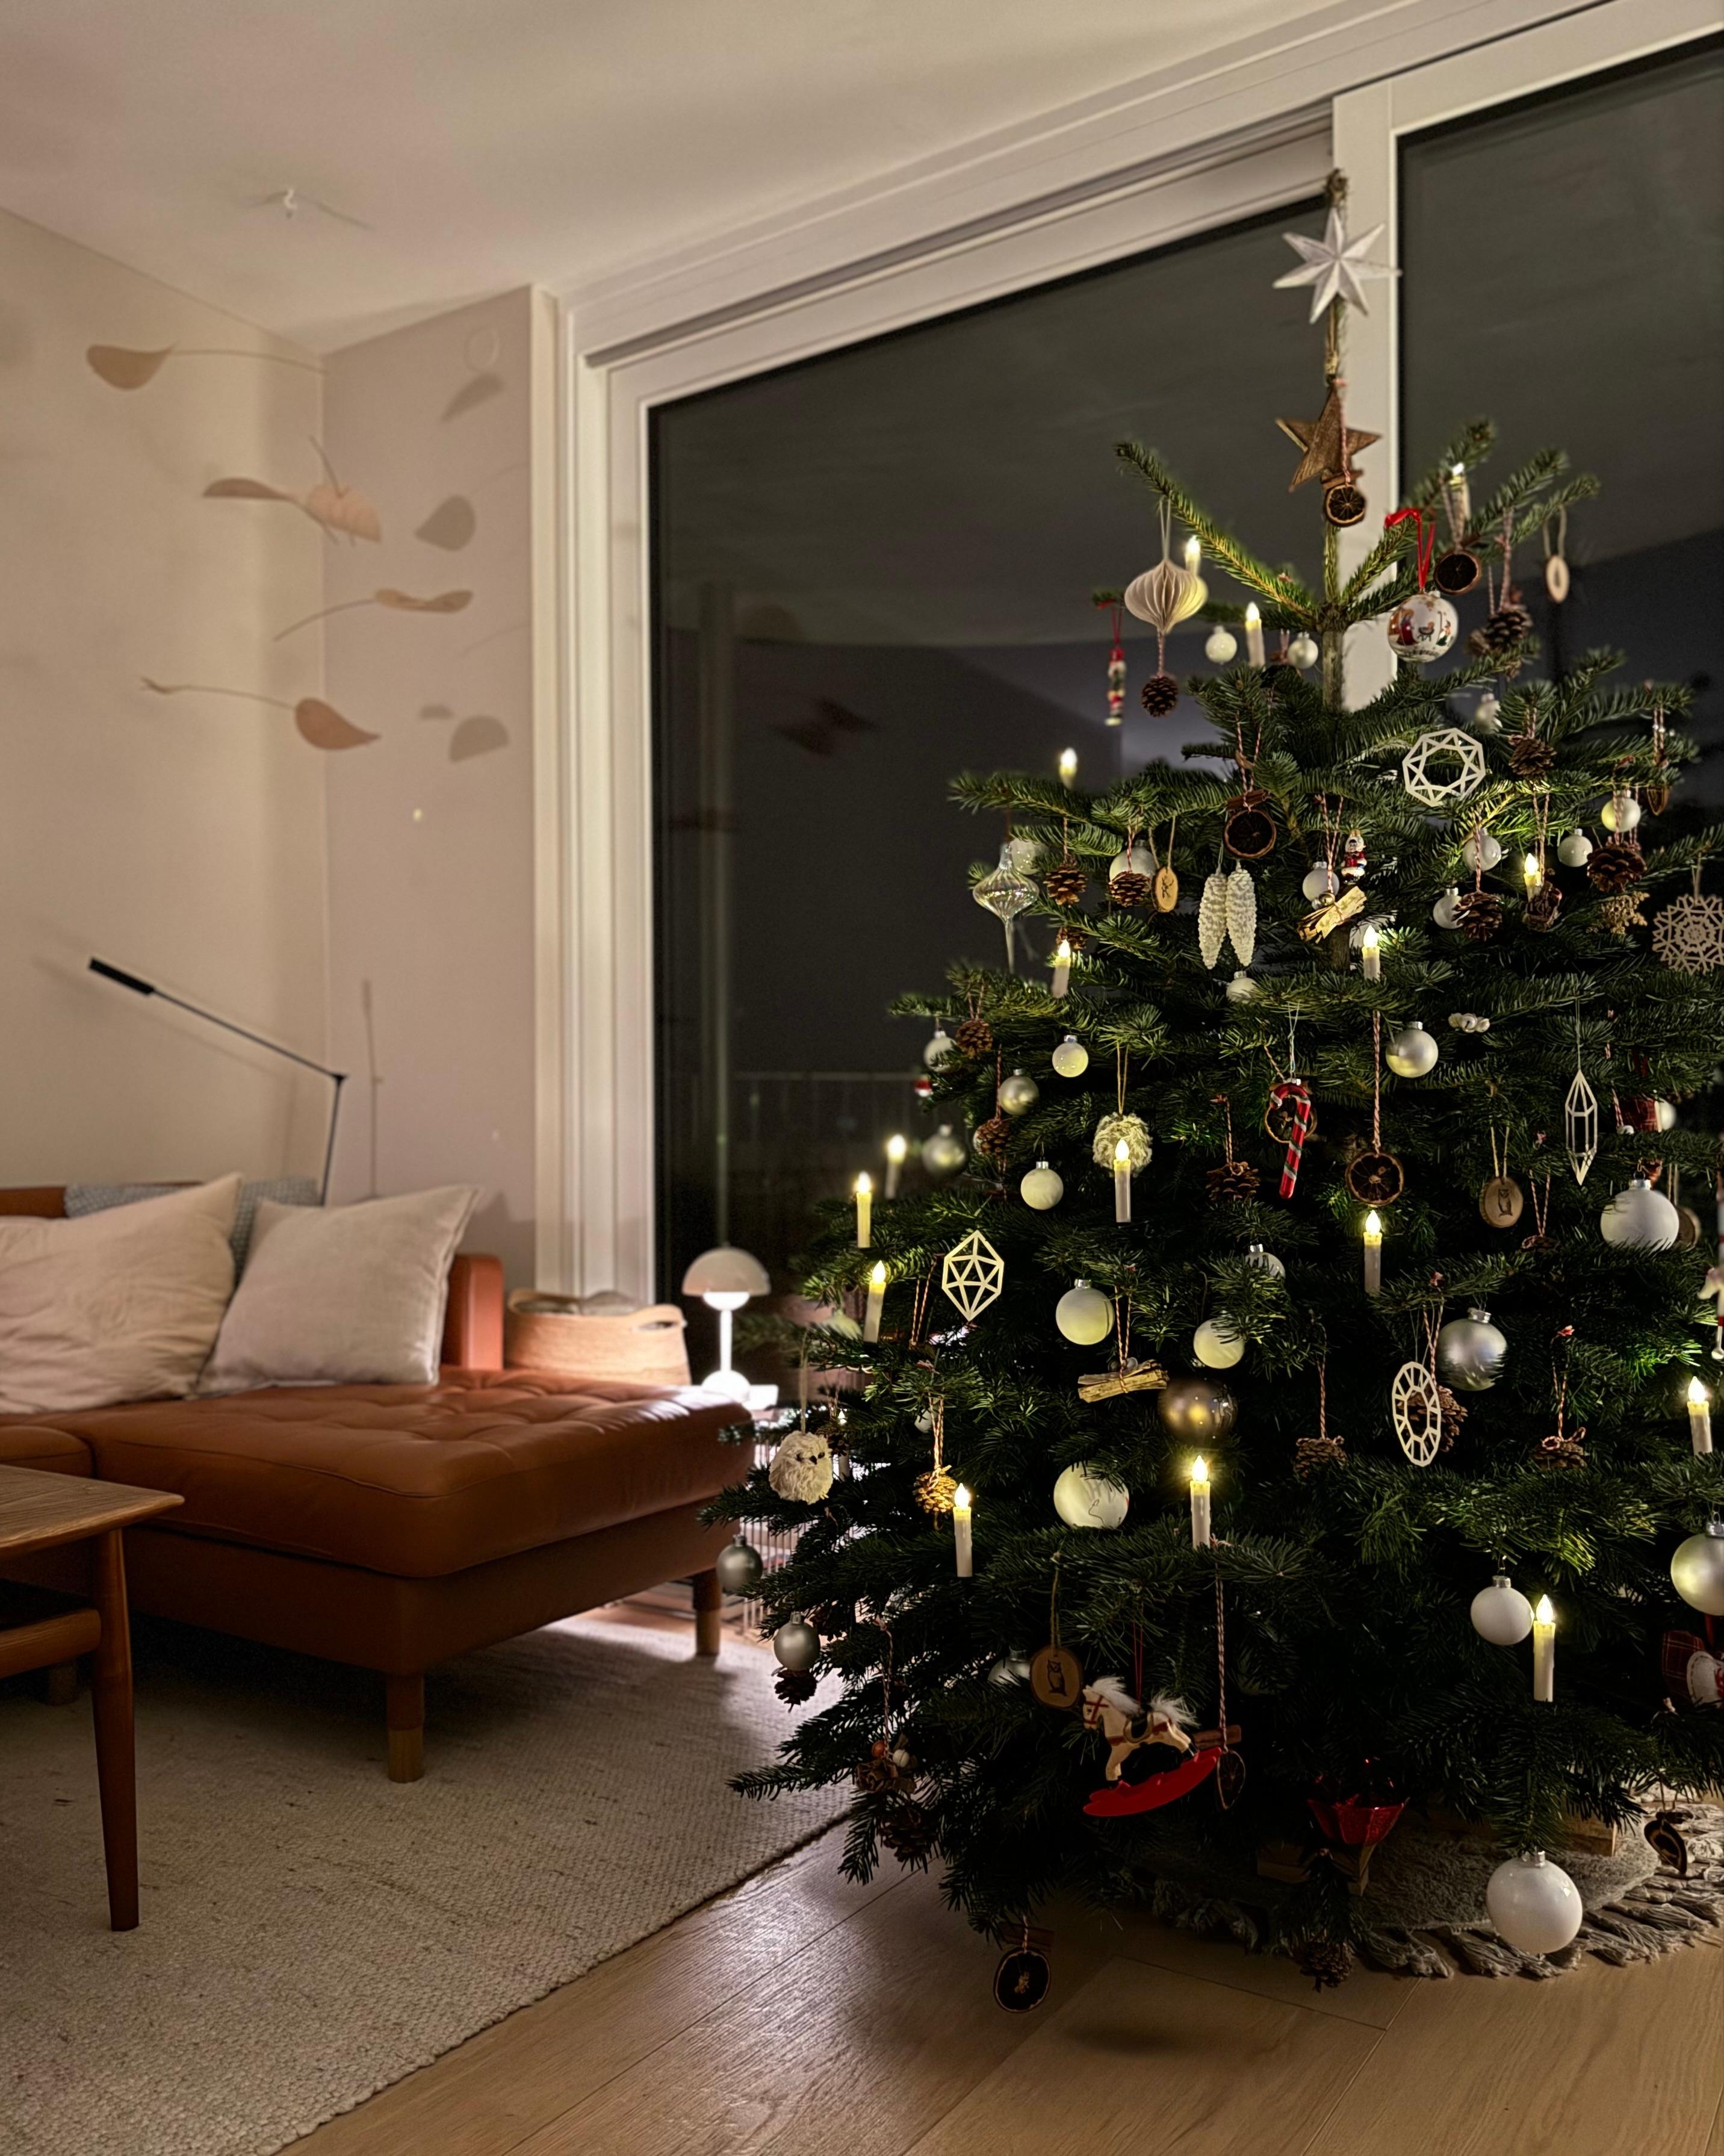 #weihnachten #weihnachtsbaum #christbaum #dekoration #weihnachtsschmuck #kerzen 